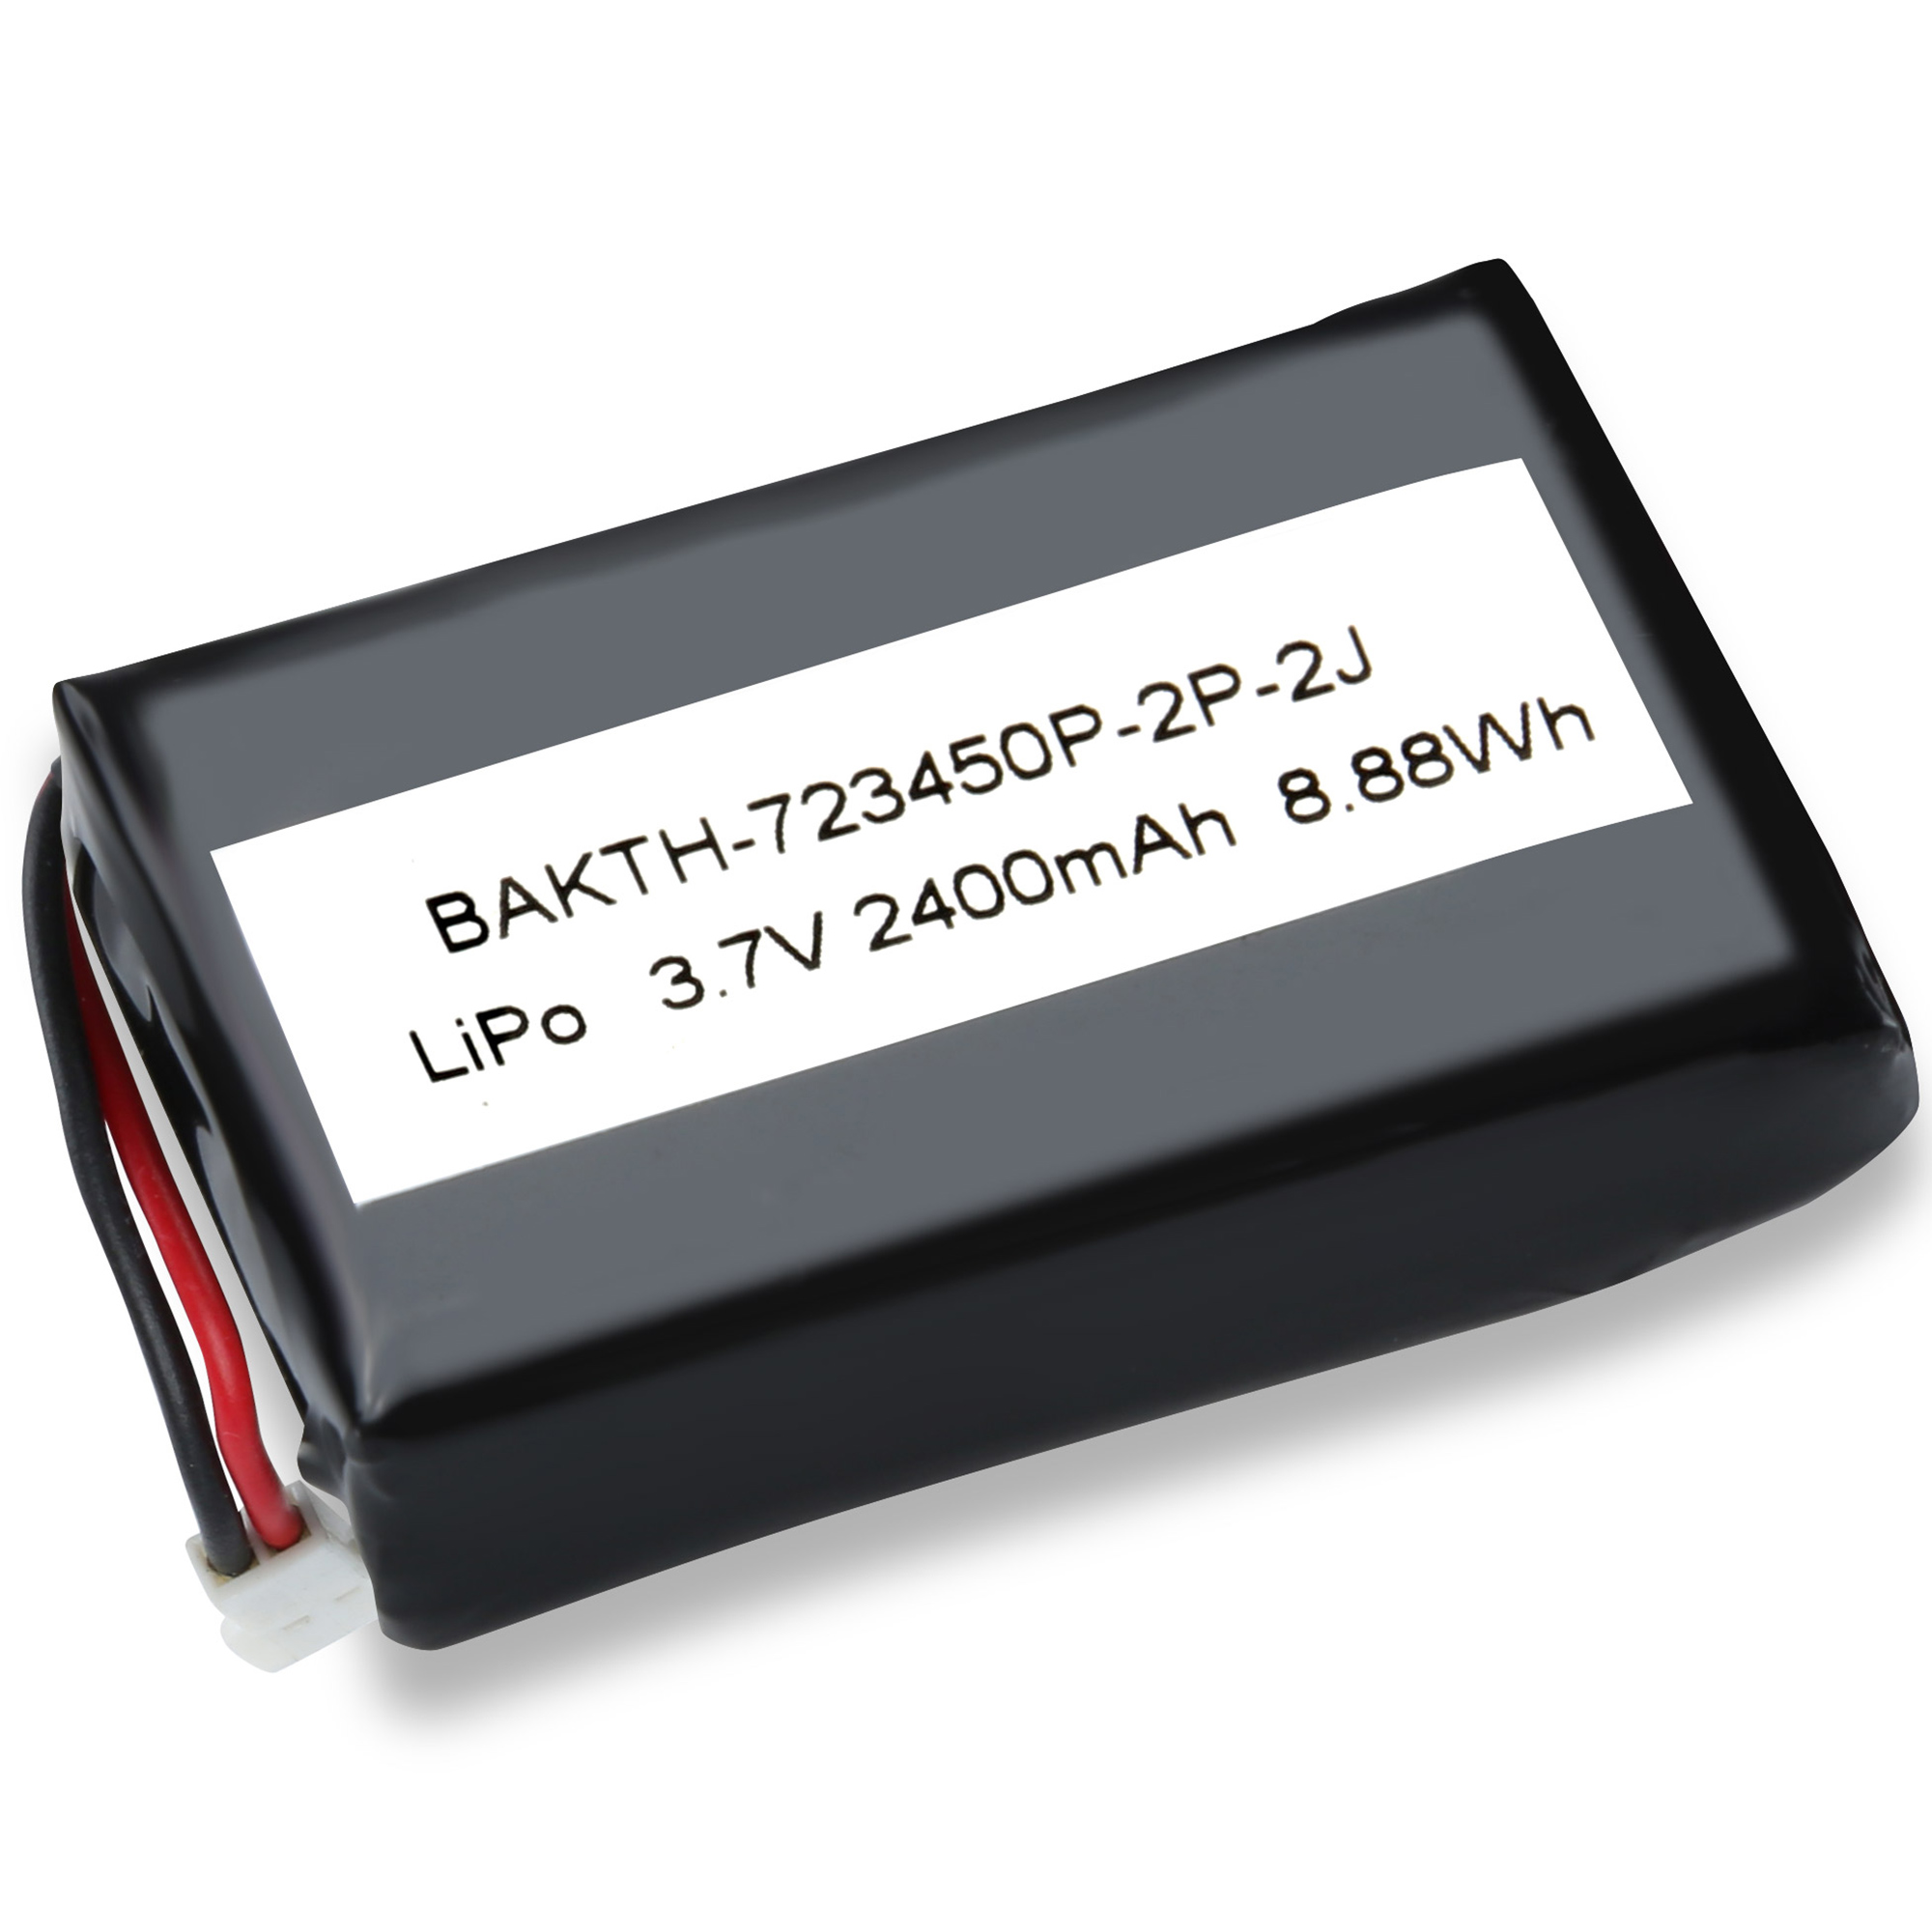 BAKTH-723450P-2P-3J Batería de polímero de litio recargable 3.7V 2400 mAh Batería